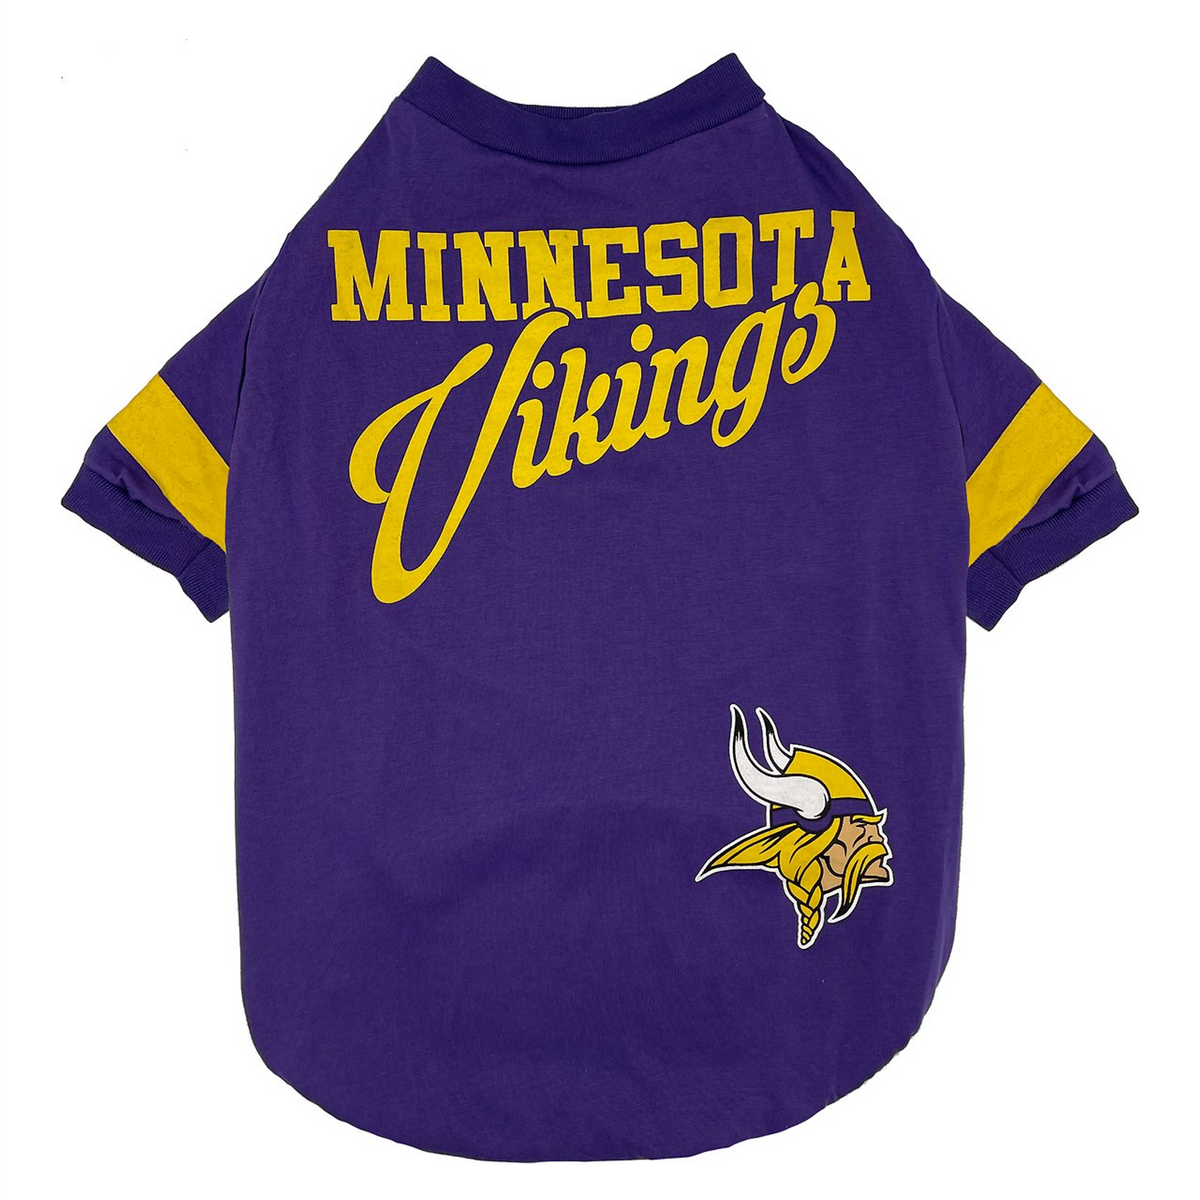 Minnesota Vikings Stripe Tee Shirt - 3 Red Rovers